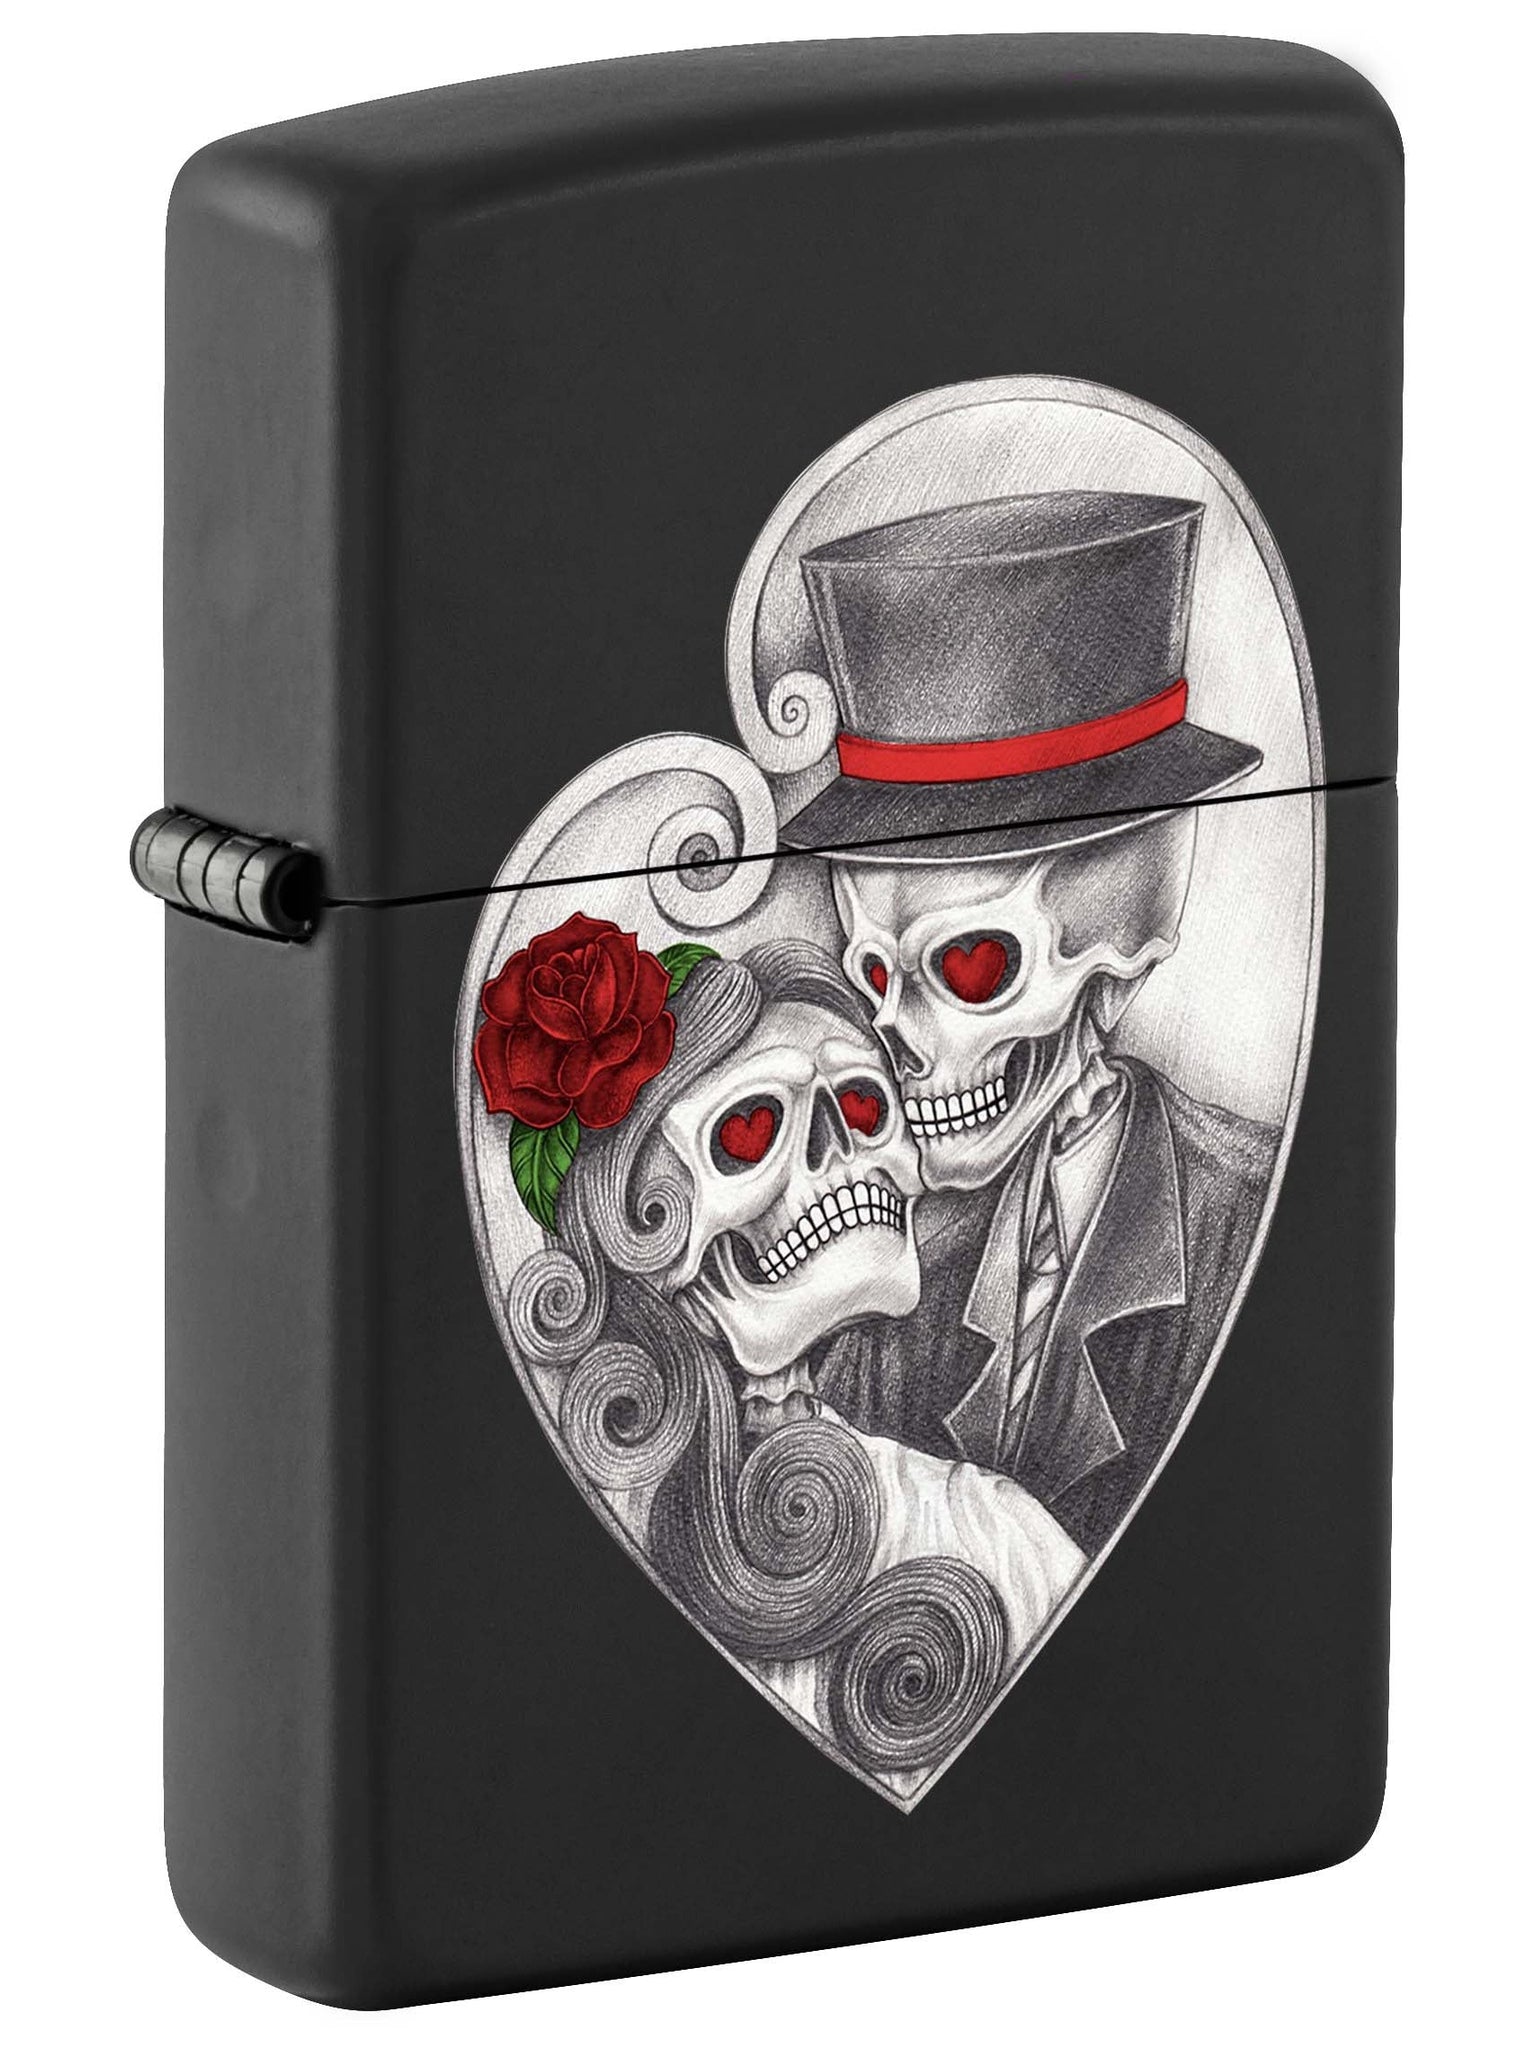 Zippo Lighter: Gothic Skull Couple Design - Black Matte 81119